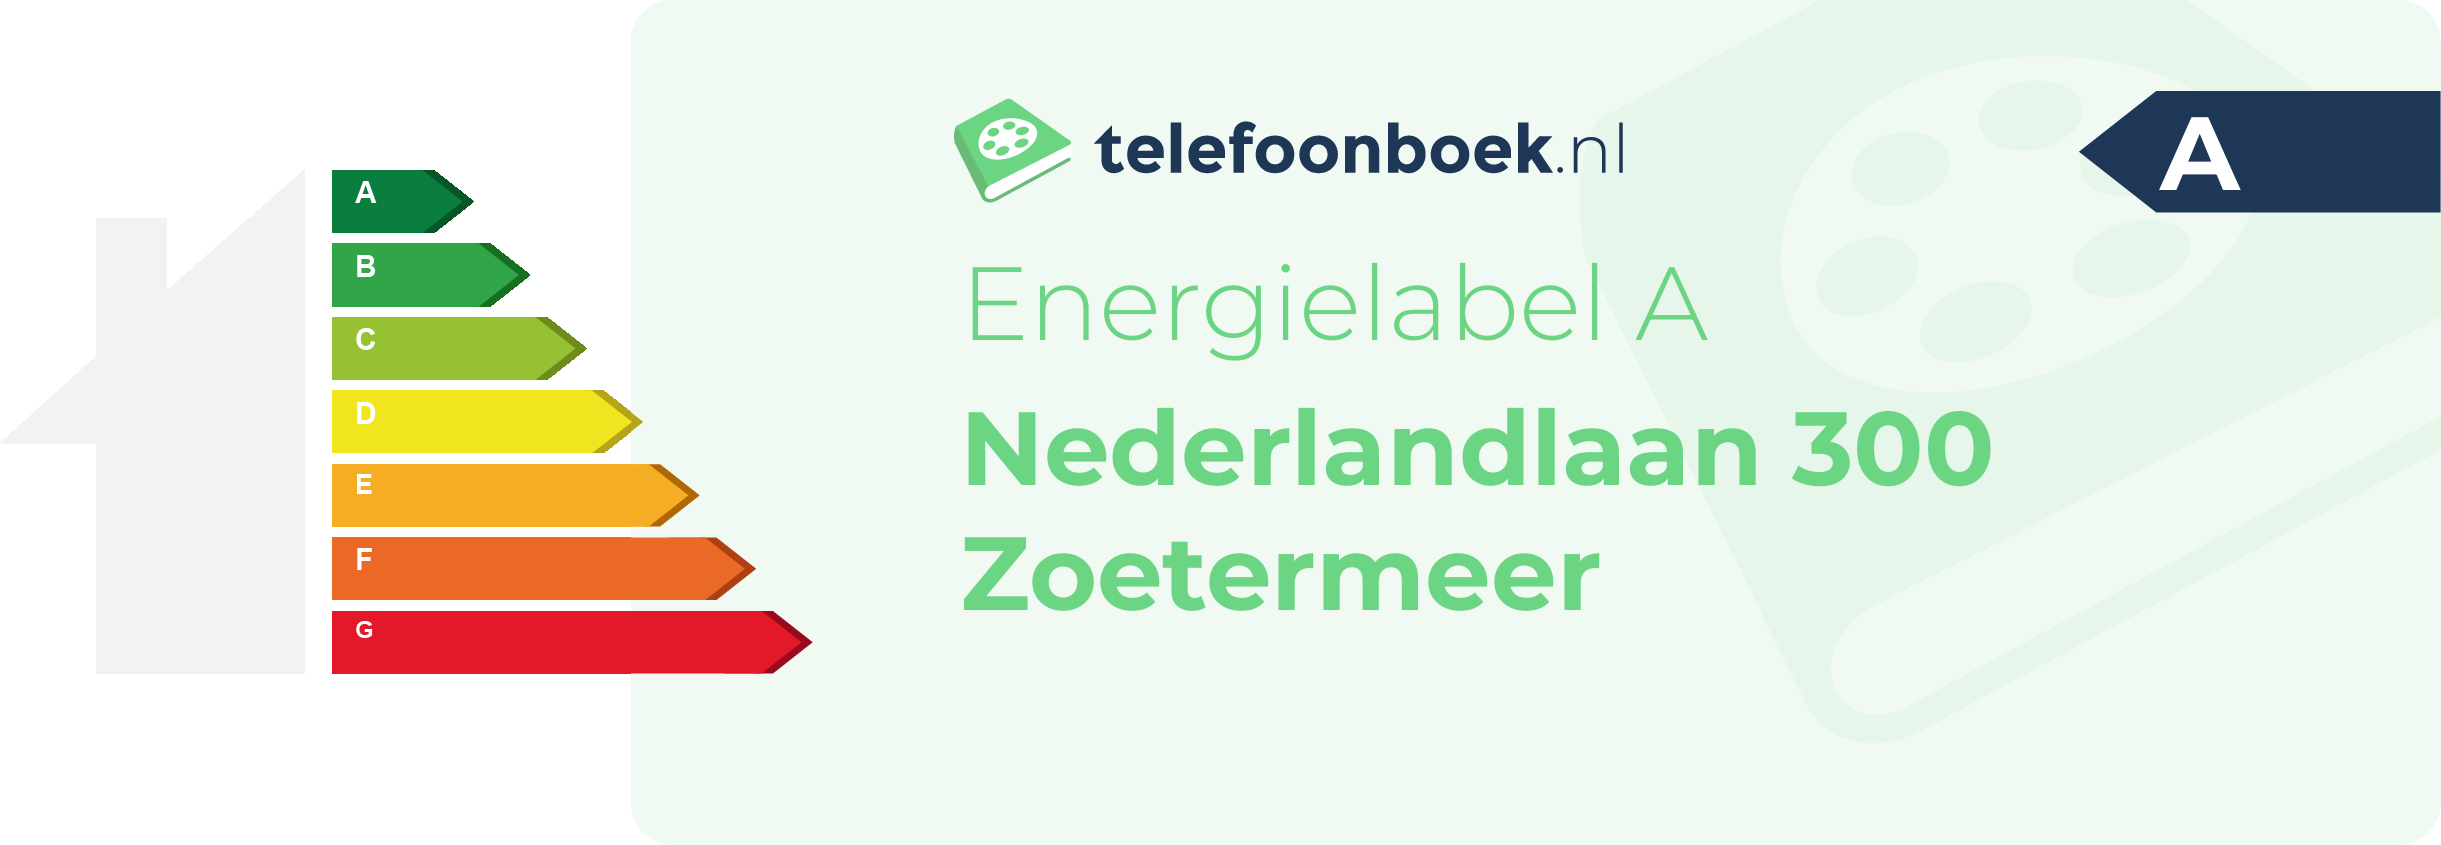 Energielabel Nederlandlaan 300 Zoetermeer